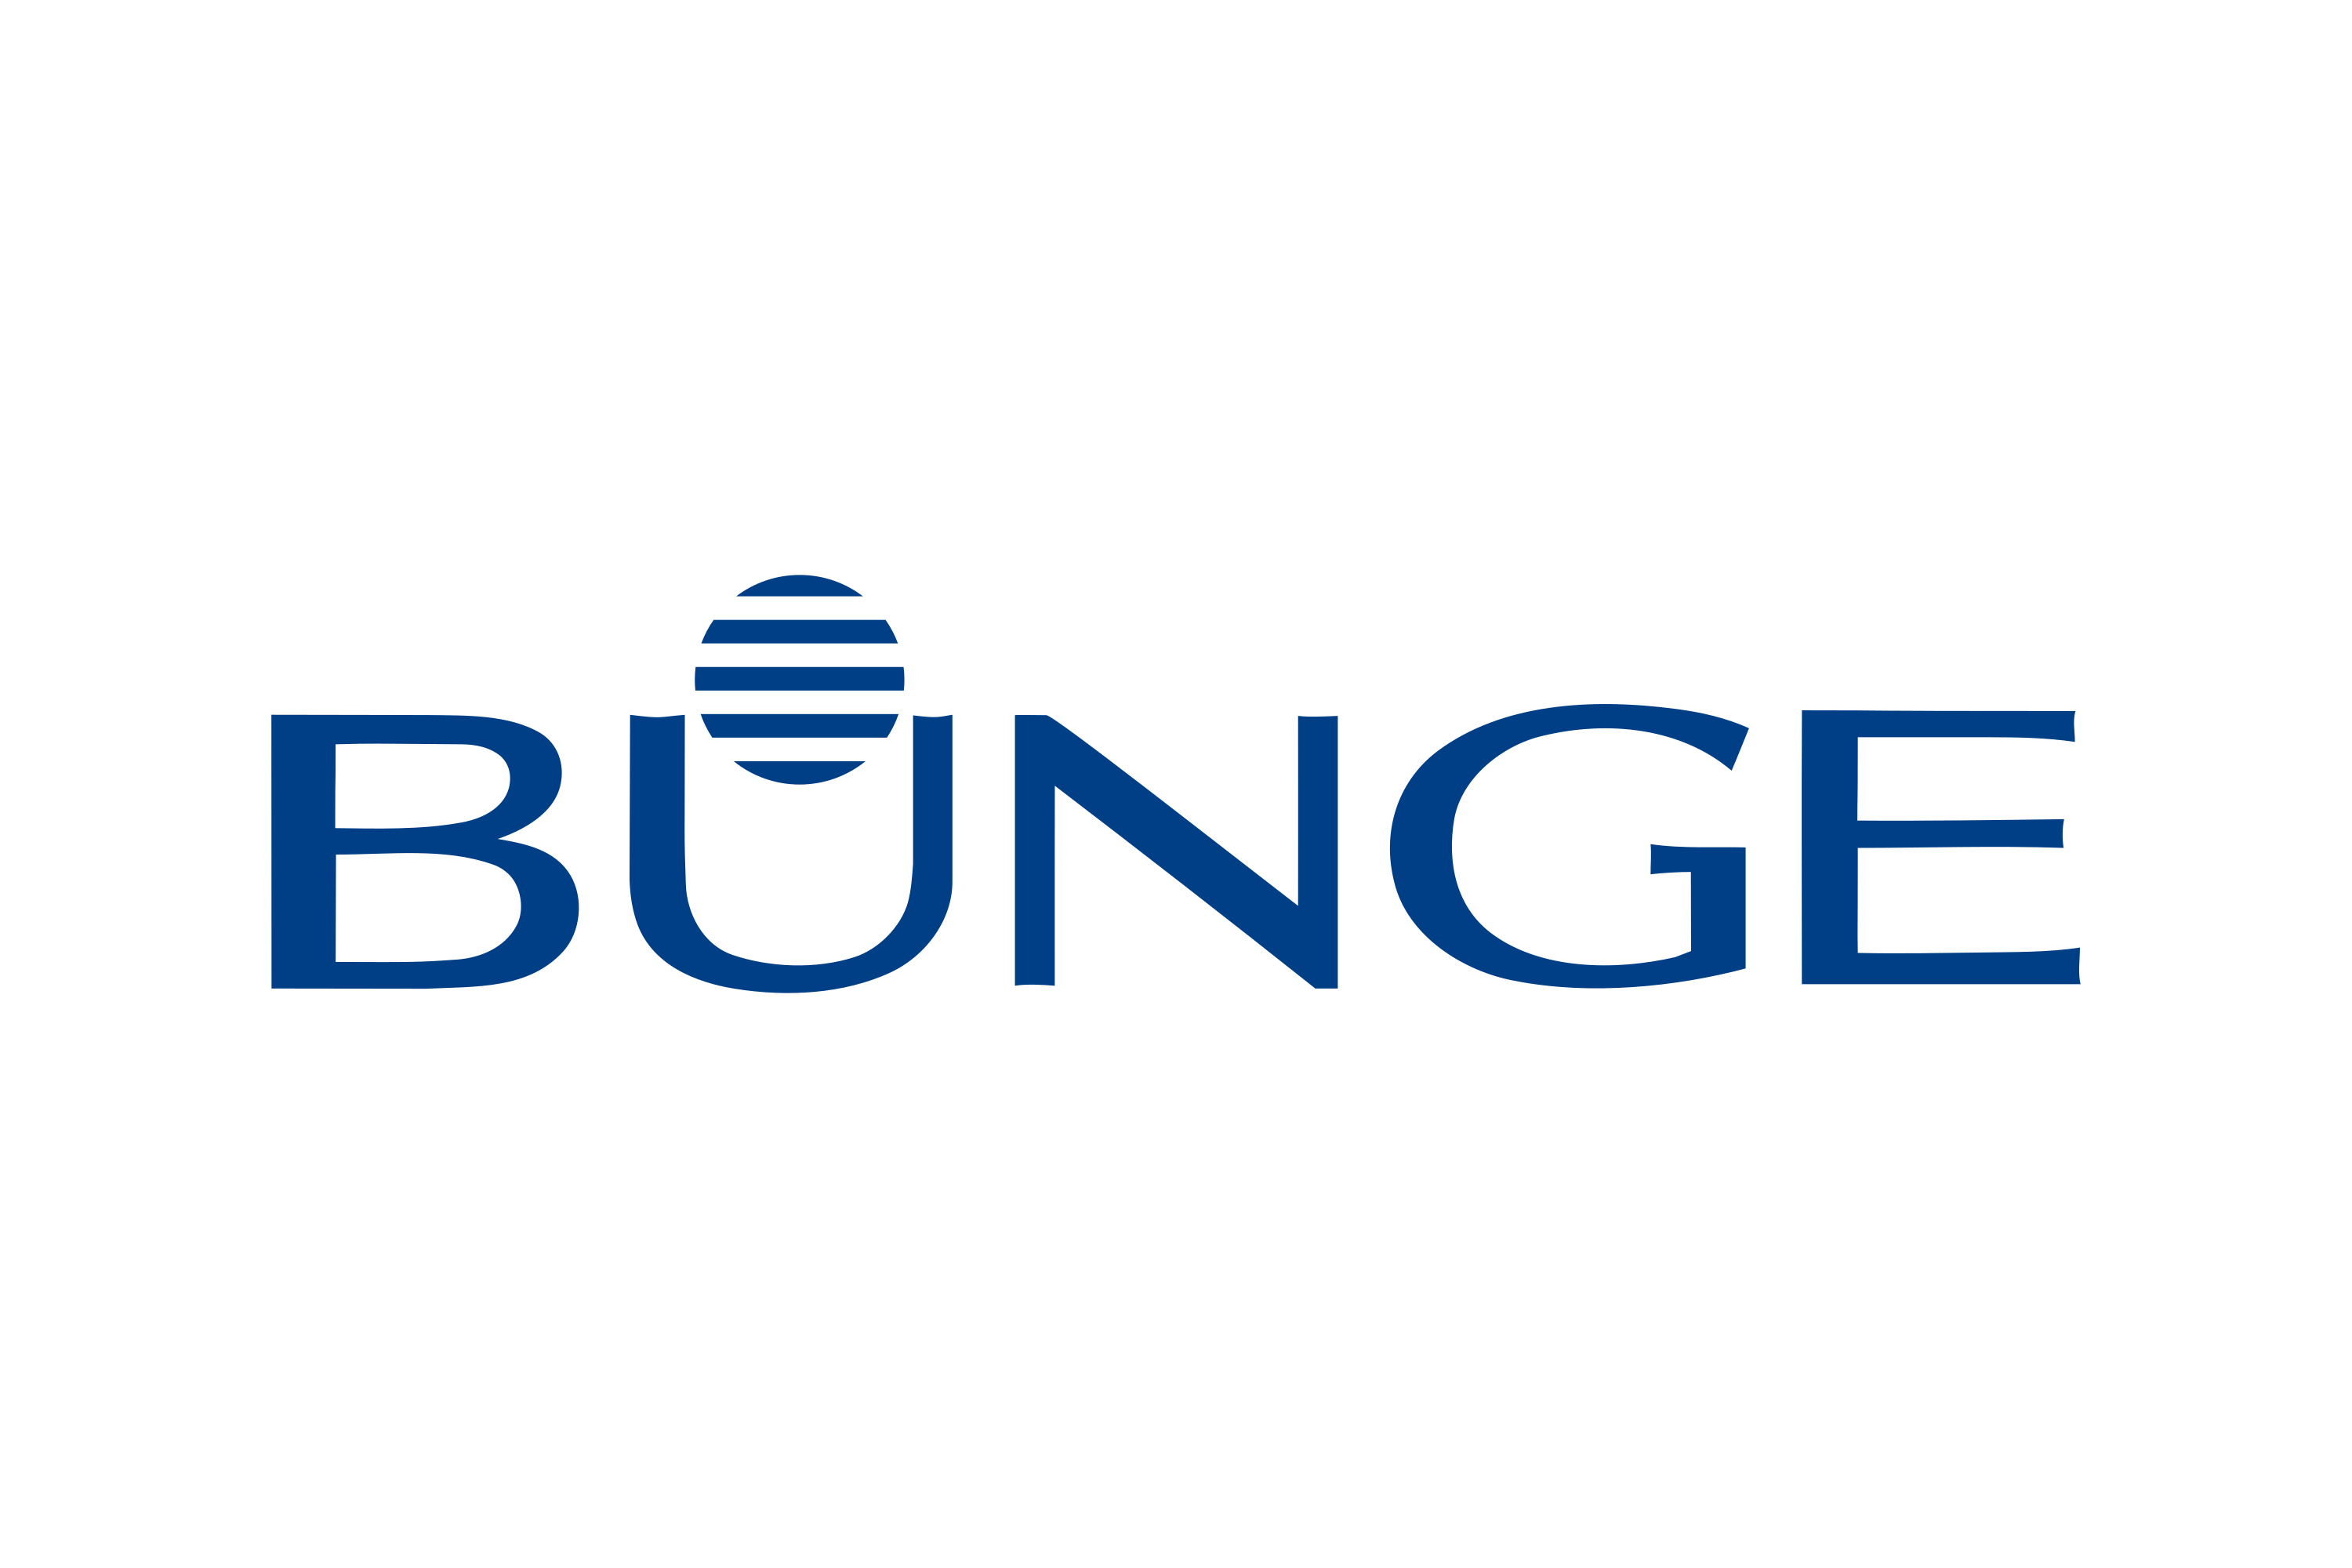 Download Bunge Limited Logo in SVG Vector or PNG File Format - Logo.wine